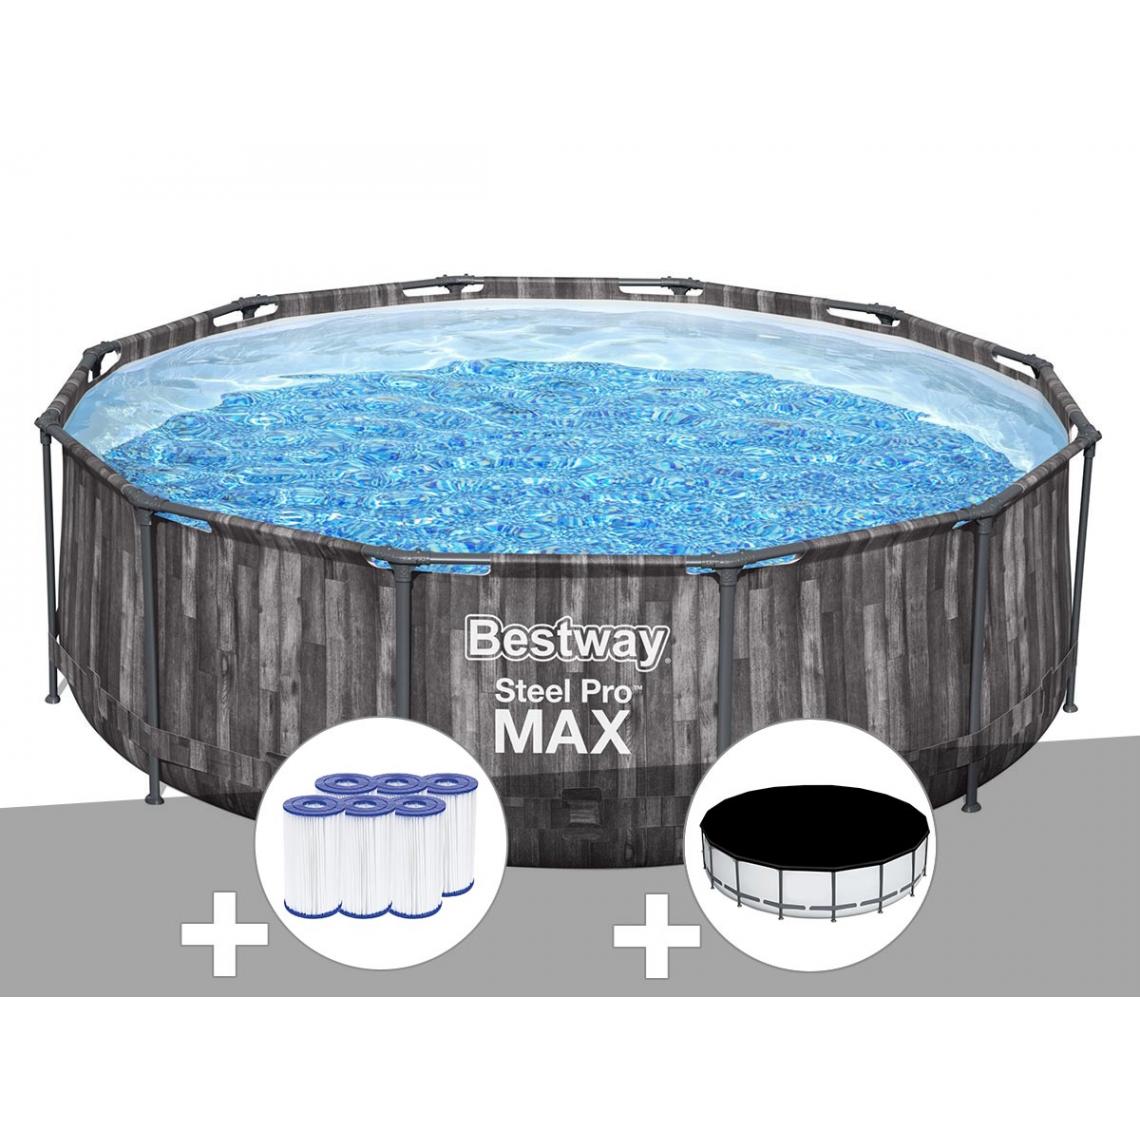 Bestway - Kit piscine tubulaire ronde Bestway Steel Pro Max décor bois 3,66 x 1,00 m + 6 cartouches de filtration + Bâche de protection - Piscine Tubulaire